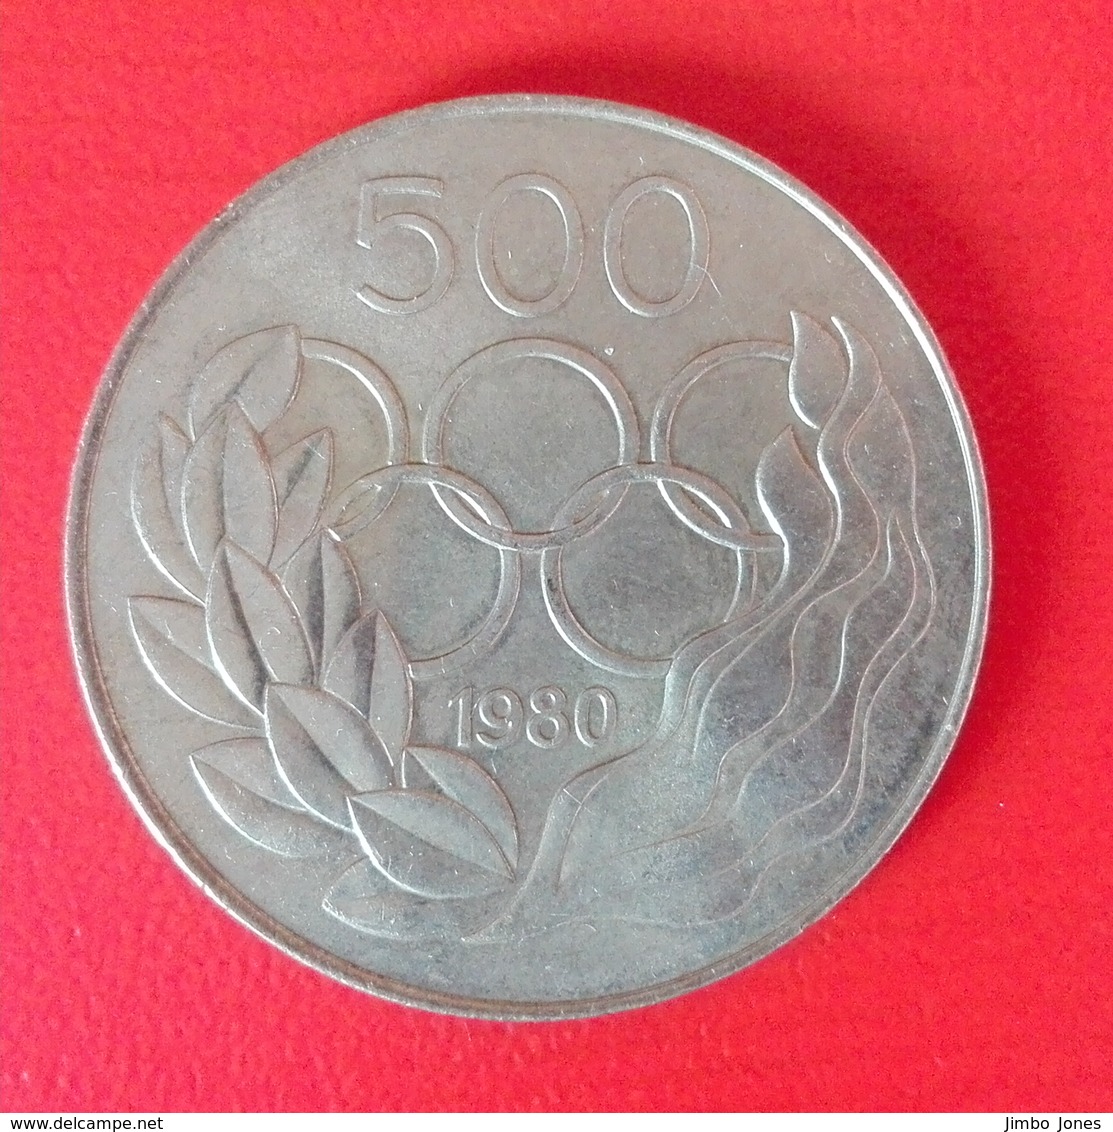 500 Mil Münze Aus Zypern Von 1980 (sehr Schön) - Cyprus